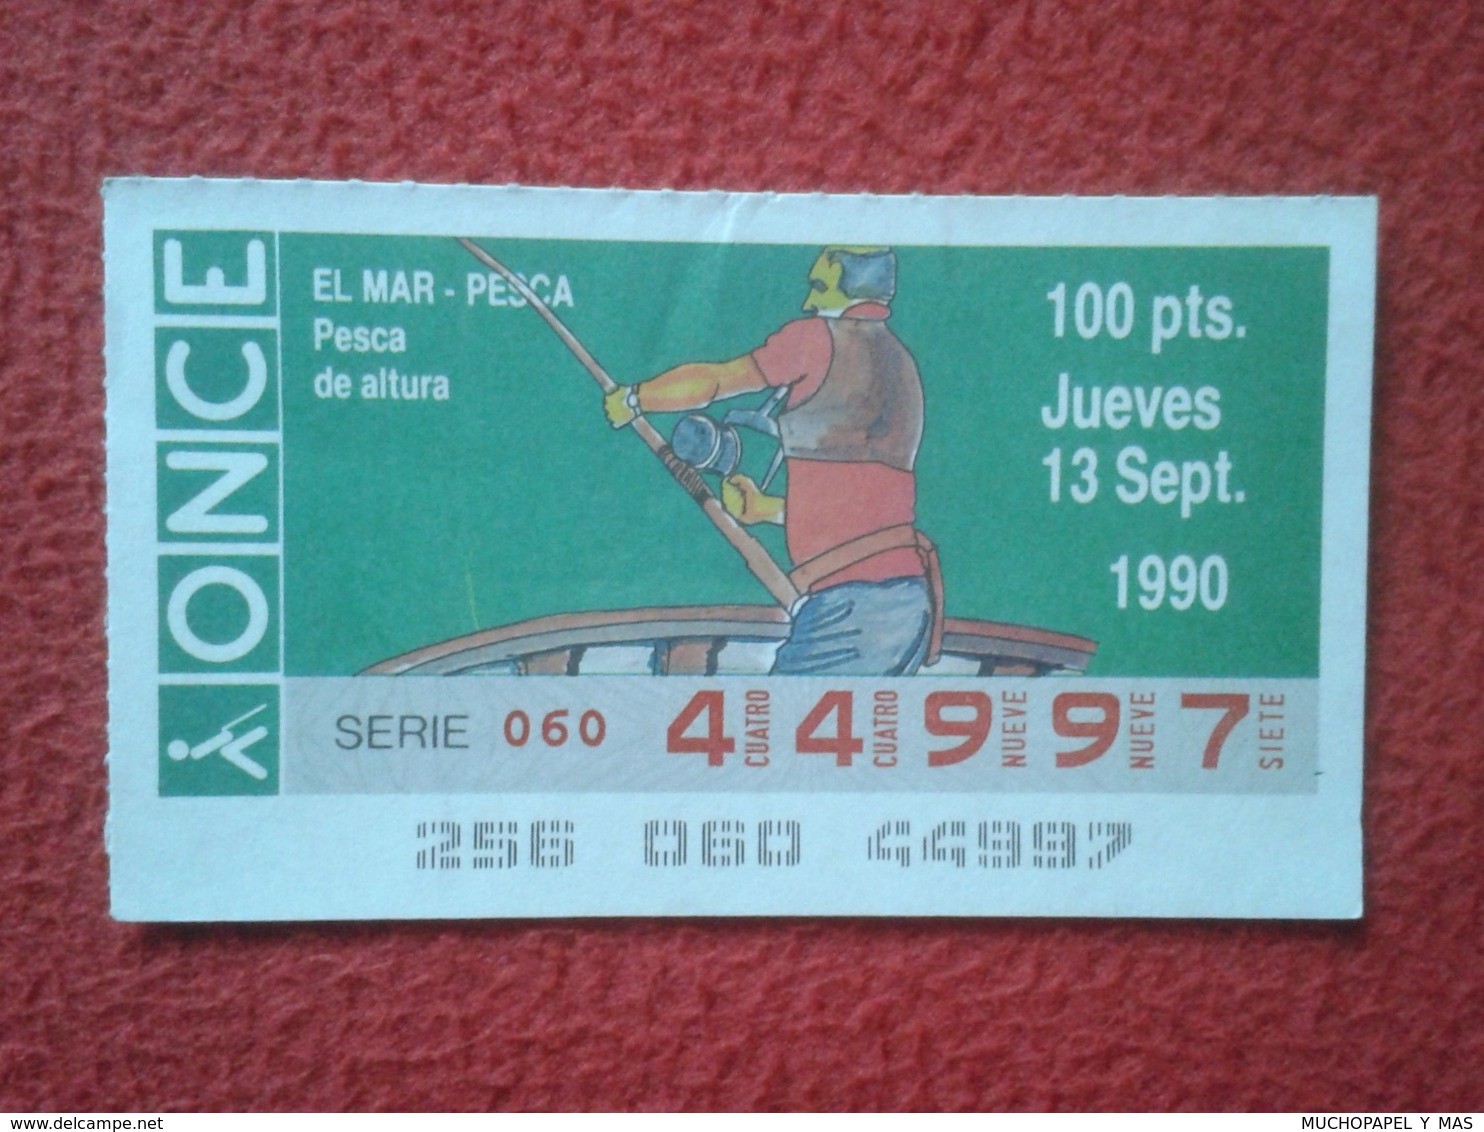 CUPÓN DE ONCE LOTTERY SPAIN LOTERÍA ESPAÑA ESPAGNE EL MAR THE SEA LA MER 1990 PESCA DE ALTURA PÊCHE FISHING FISHERMAN... - Billetes De Lotería